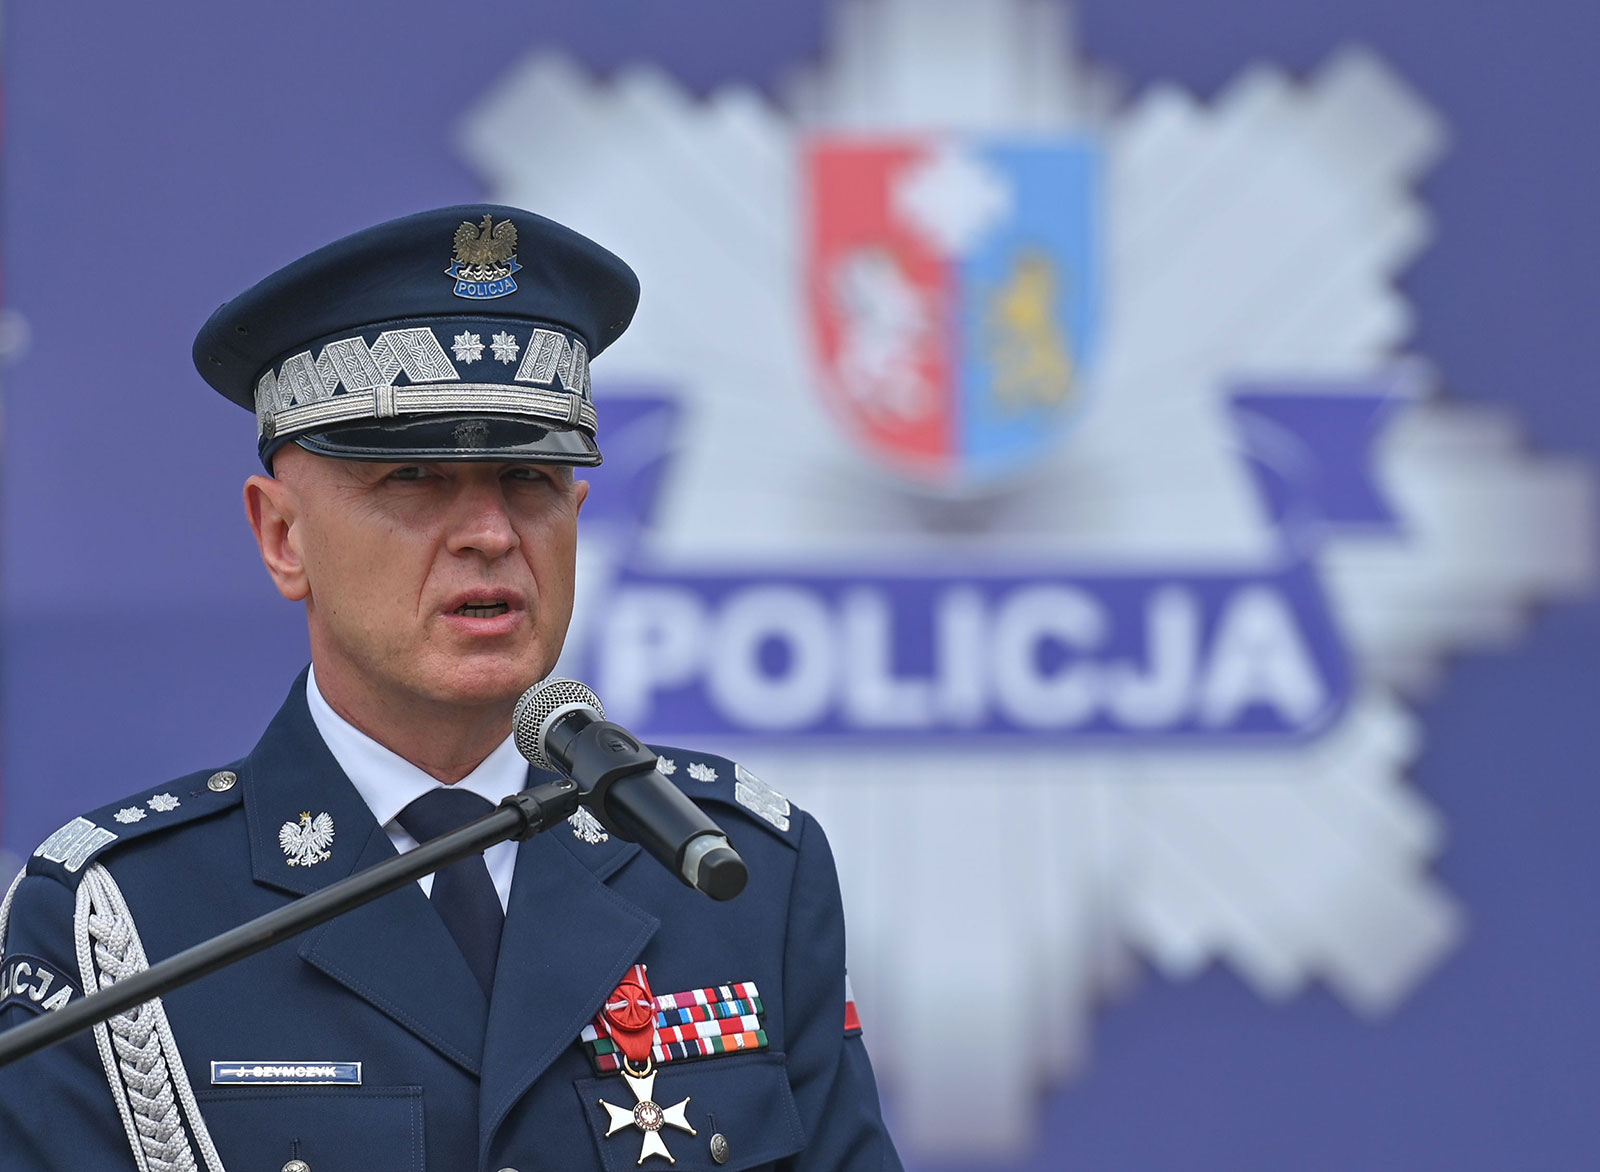 Poland’s police chief Jaroslaw Szymczyk is seen in July in Rzeszow, Poland. 